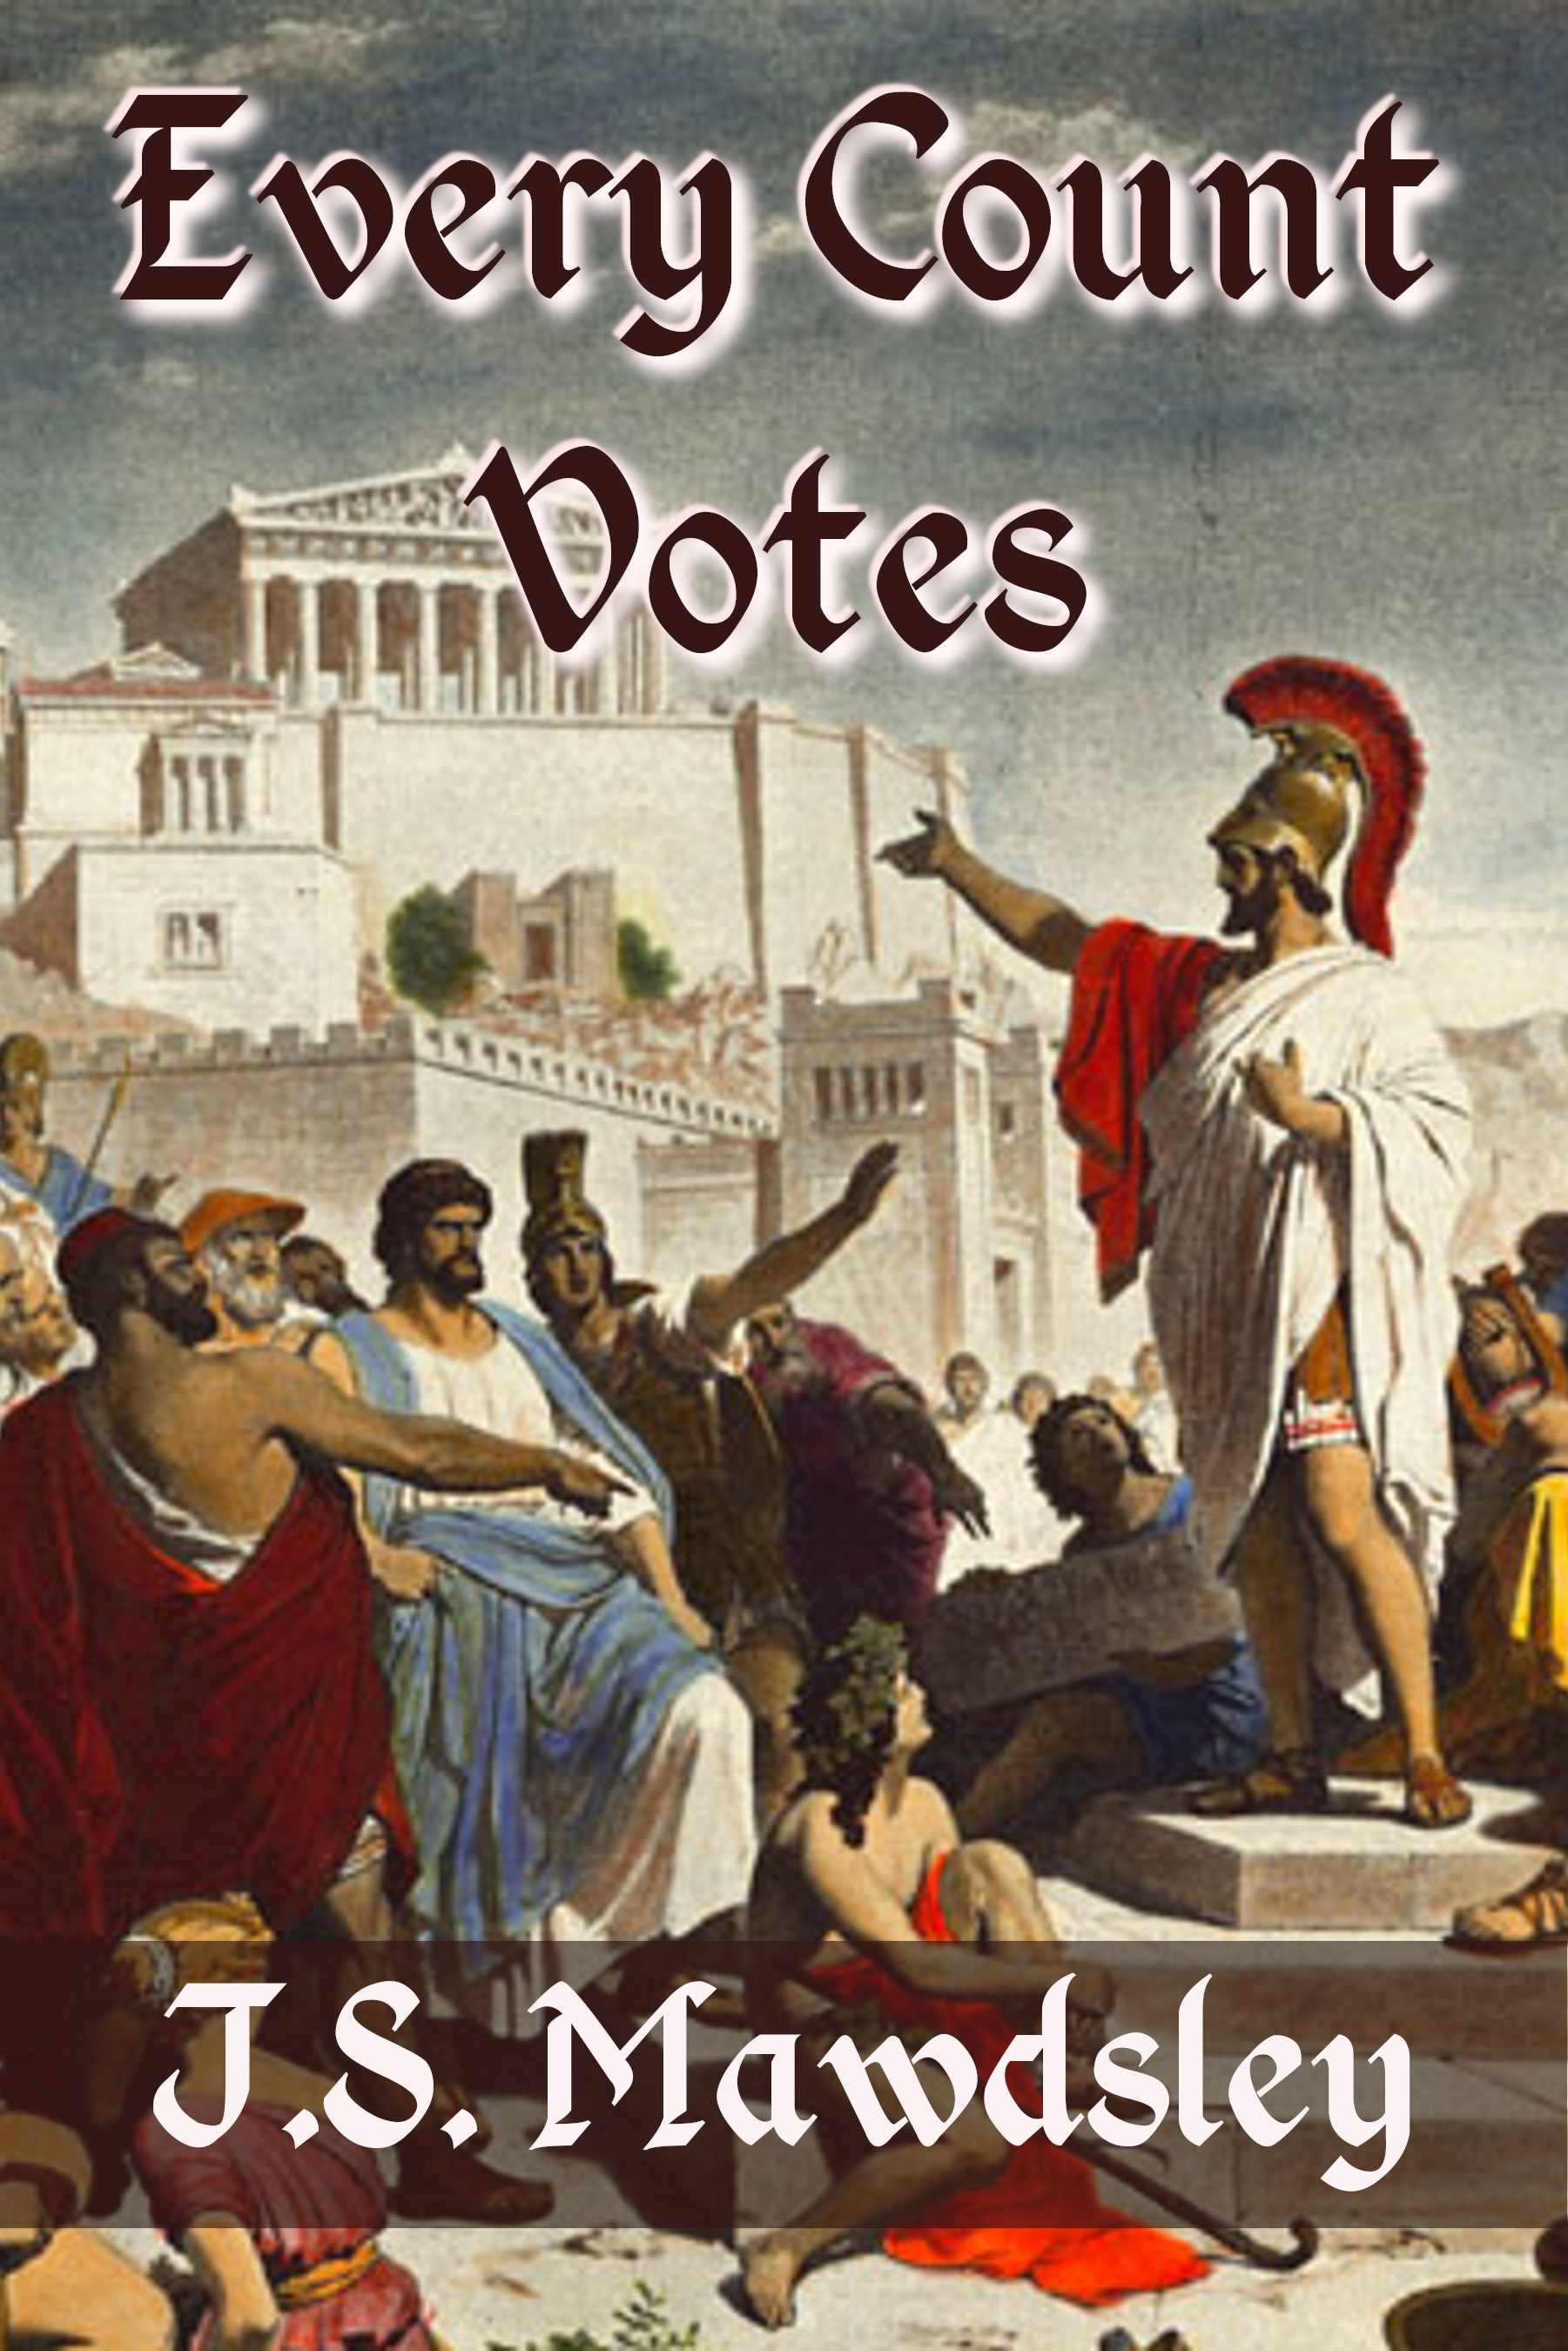 Кто заложил демократию в афинах